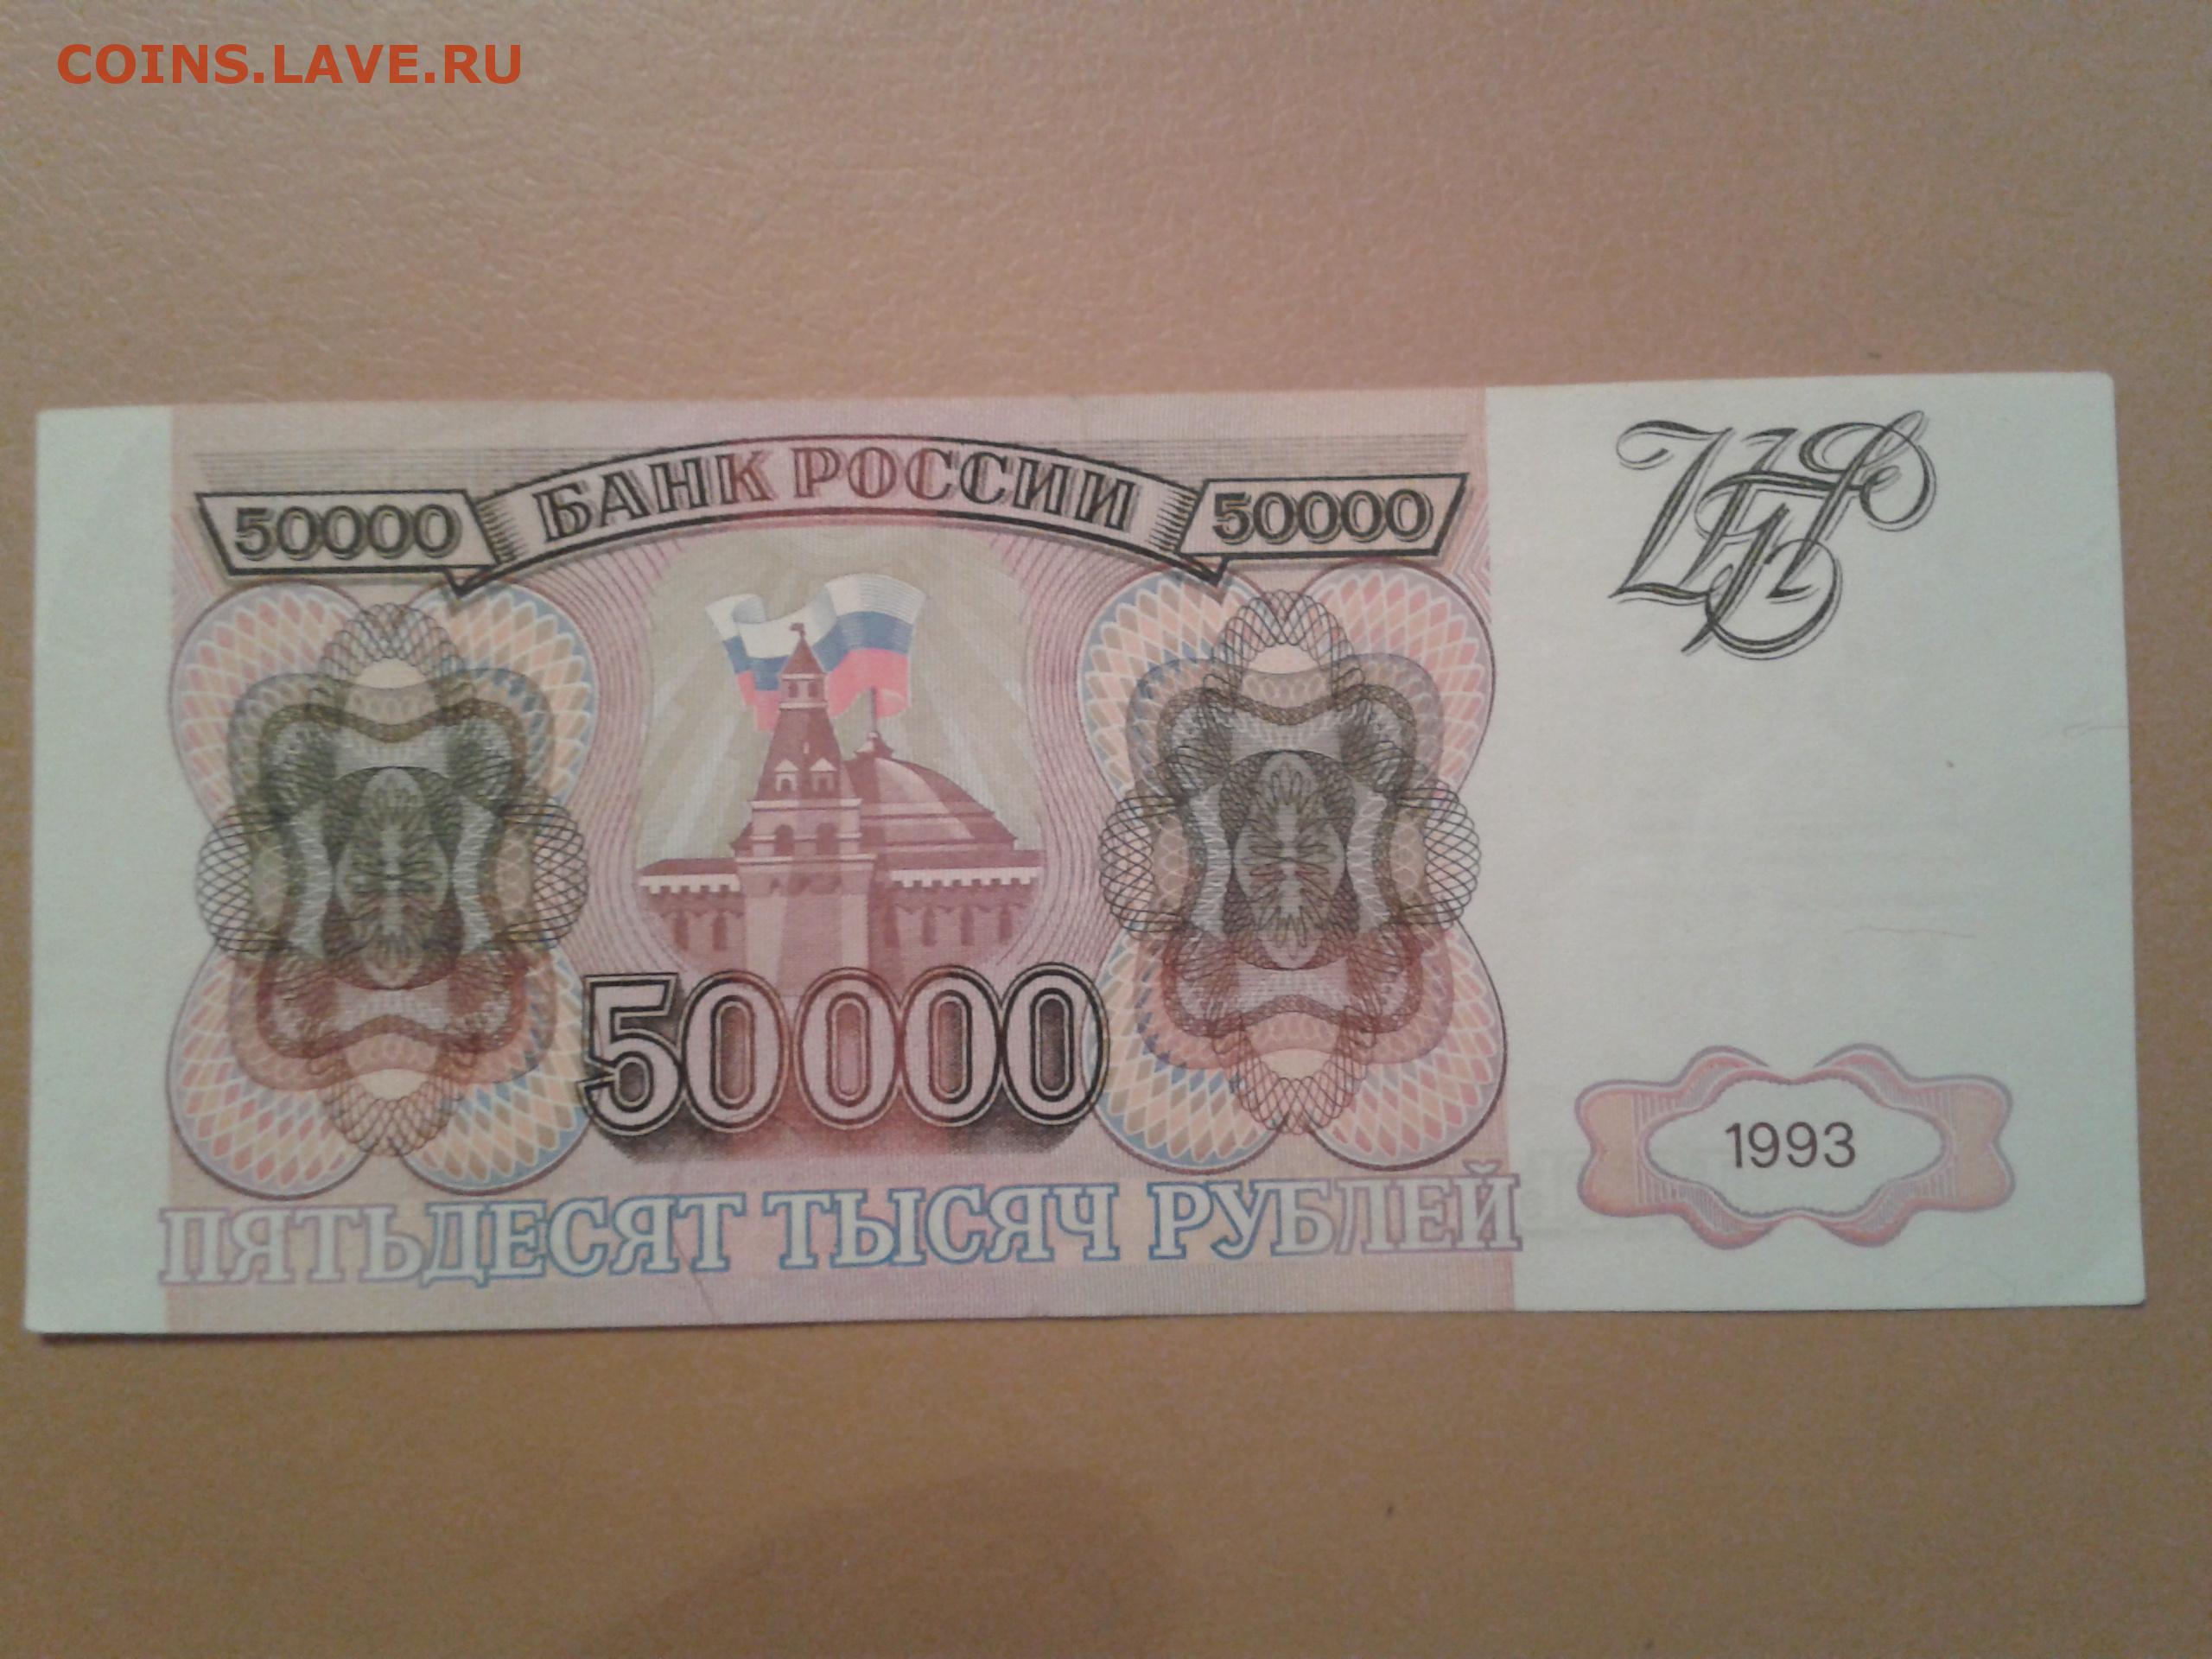 50 000 рублей купить. Купюра 50000 рублей 1993 года. Банкнота 50000 рублей 1993. Деньги 1993 года. Банкнота 50000 рублей 1993 года.